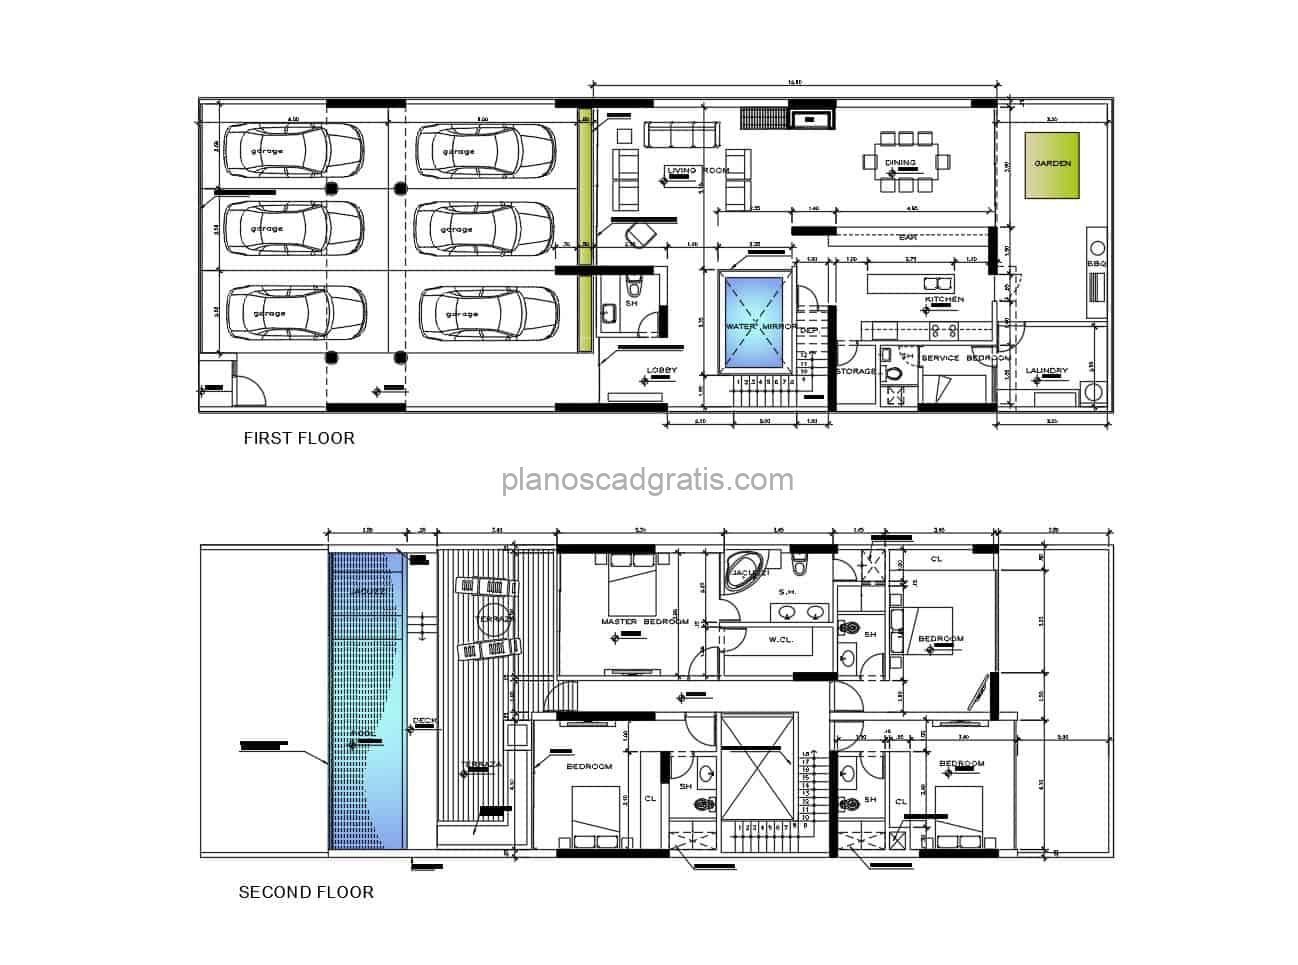 Casa de dos niveles planos en formato dwg de autocad para descargar gratis casa con dimensiones y planta arquitectonica, secciones ,fachadadas, cochera para seis vehiculos en diseño